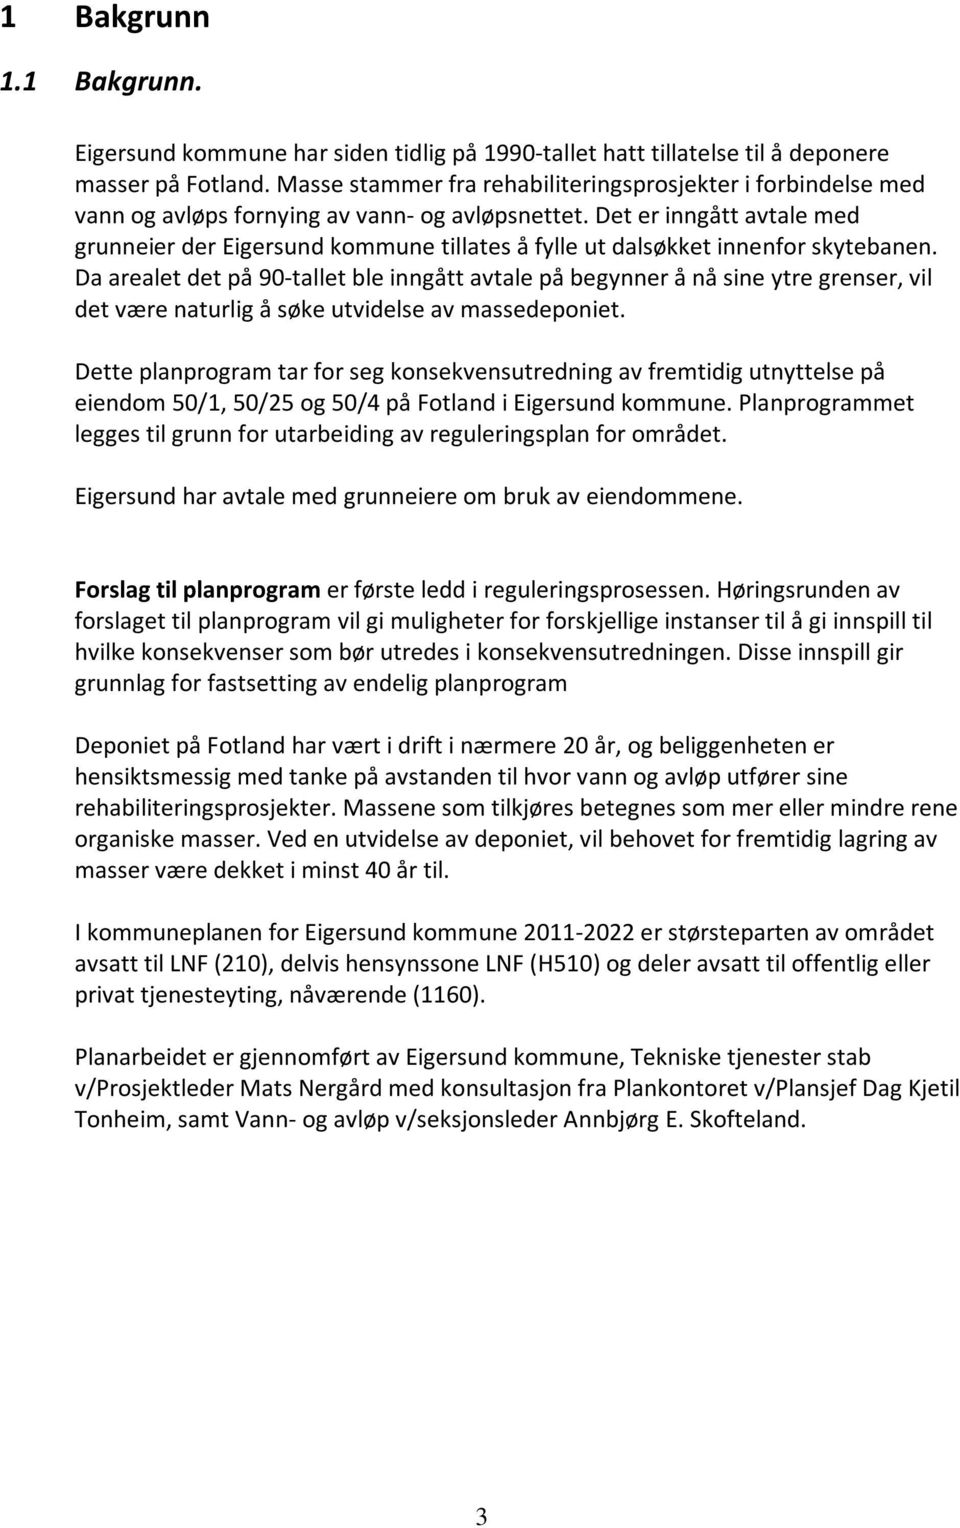 Det er inngått avtale med grunneier der Eigersund kommune tillates å fylle ut dalsøkket innenfor skytebanen.